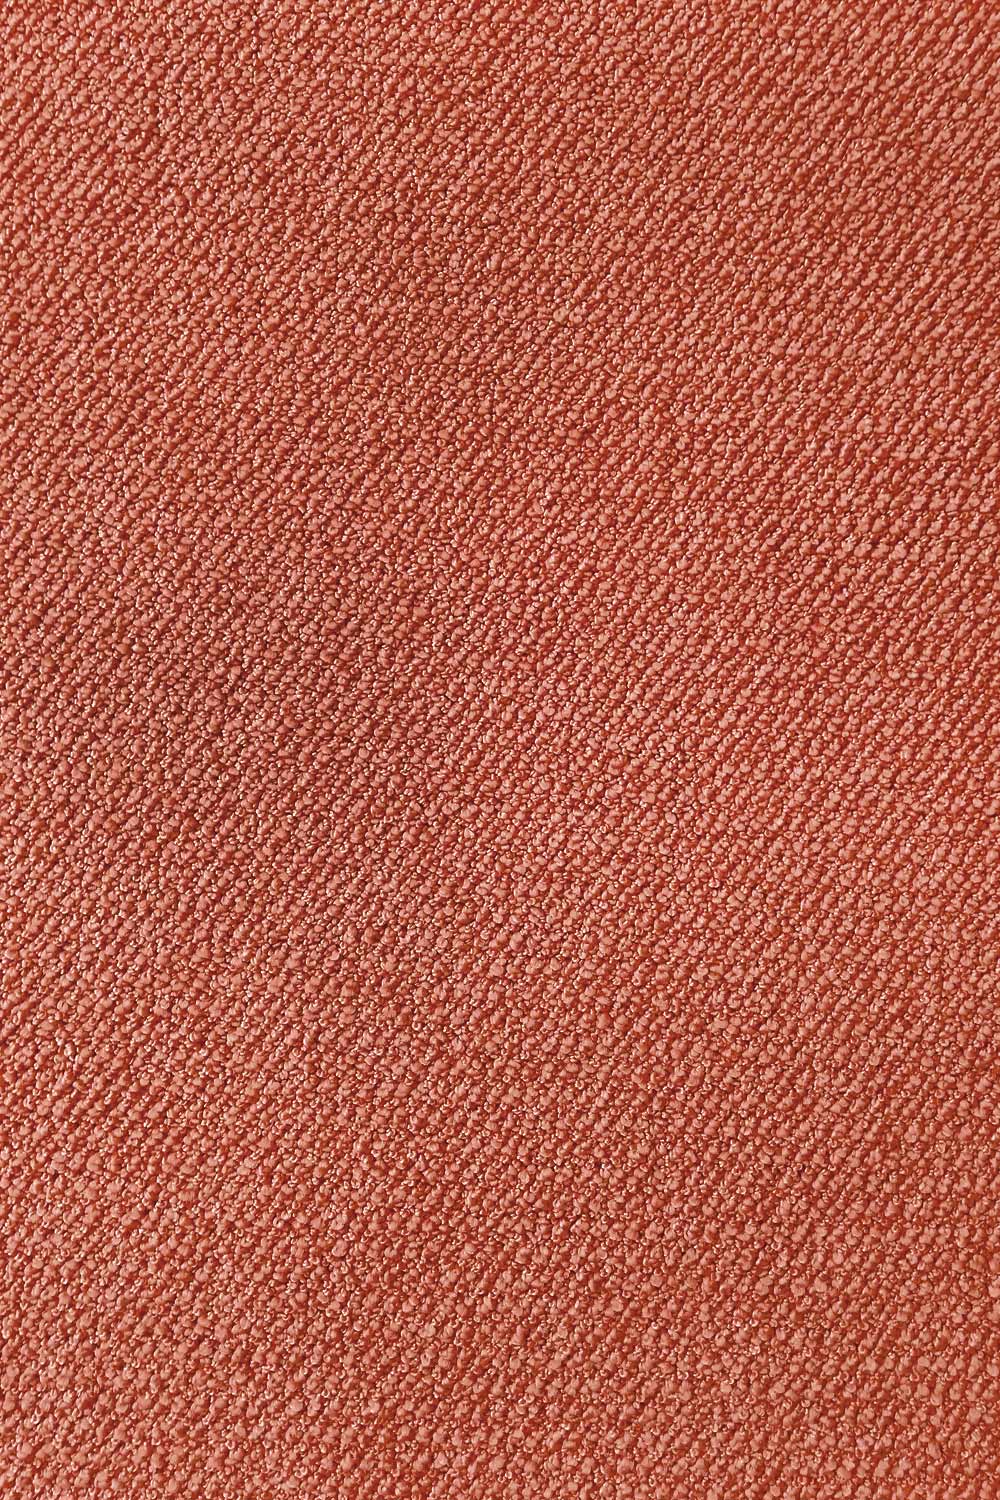 Metrážový koberec Corvino 64 400 cm